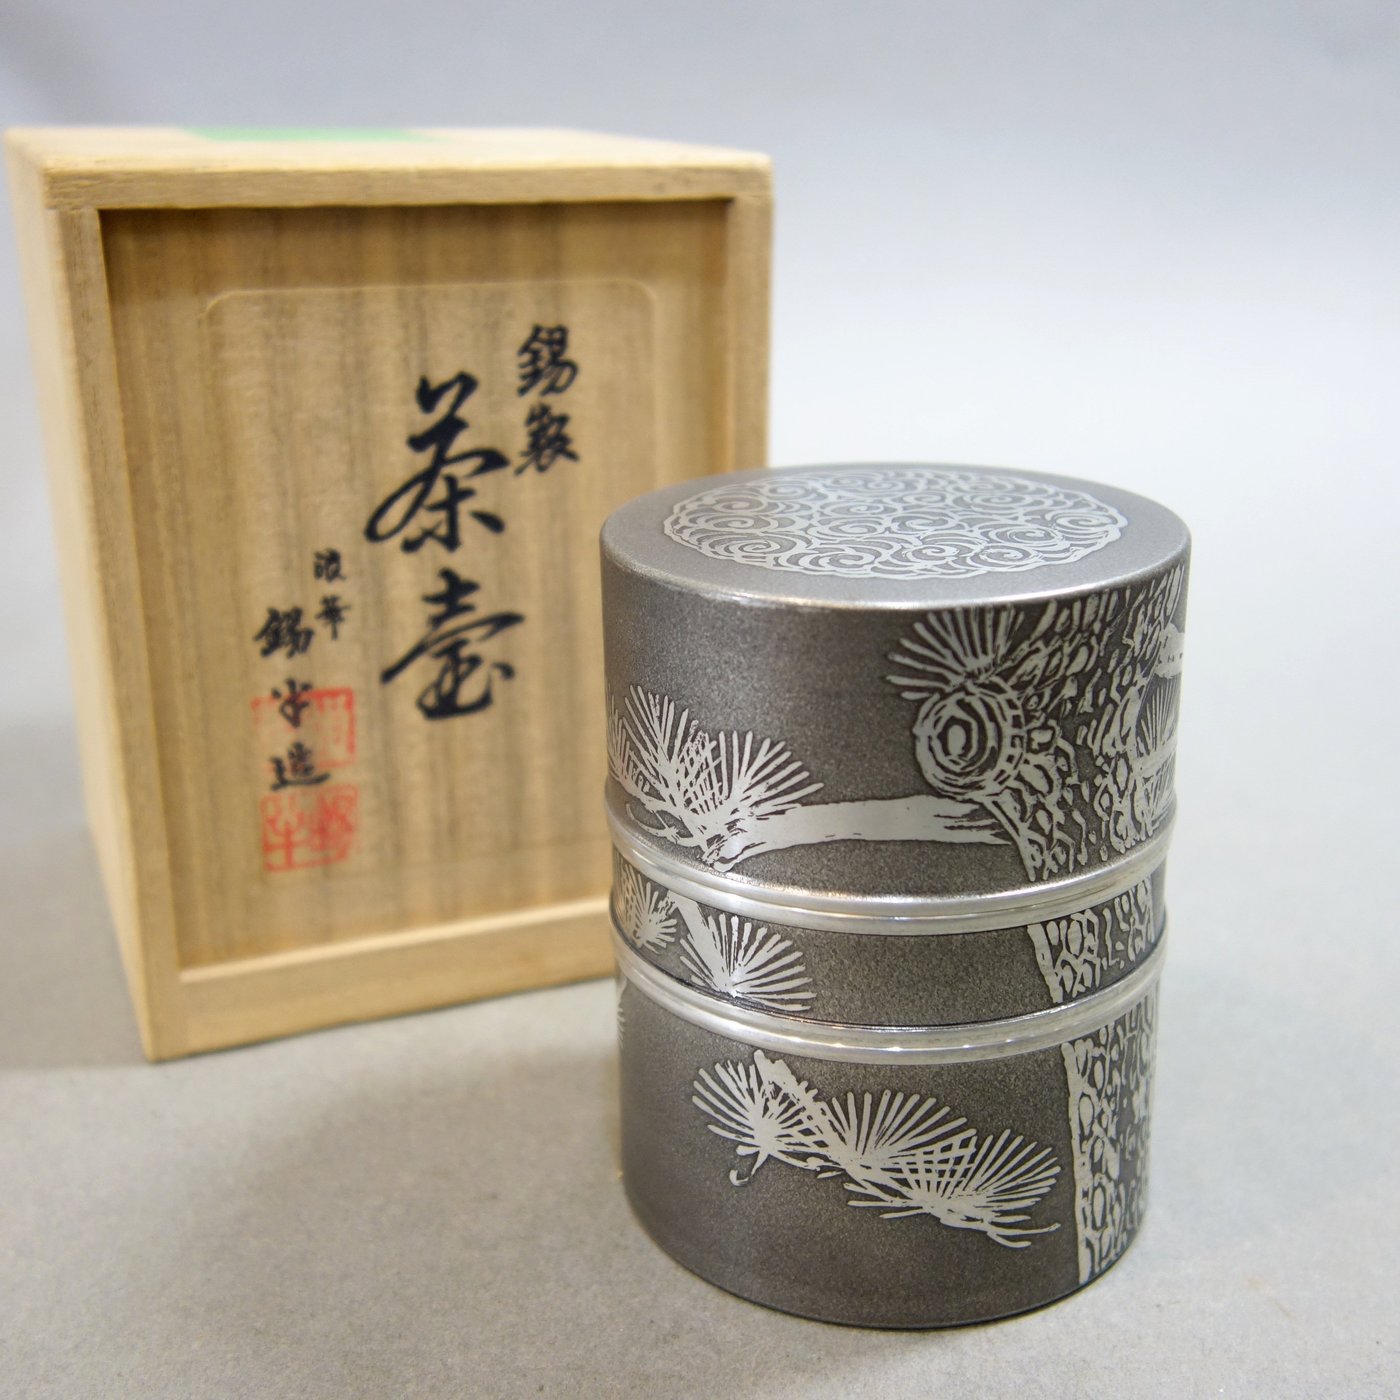 『華寶軒』日本茶道具昭和時期本錫製錫半造長青松纹筒形中形茶入 